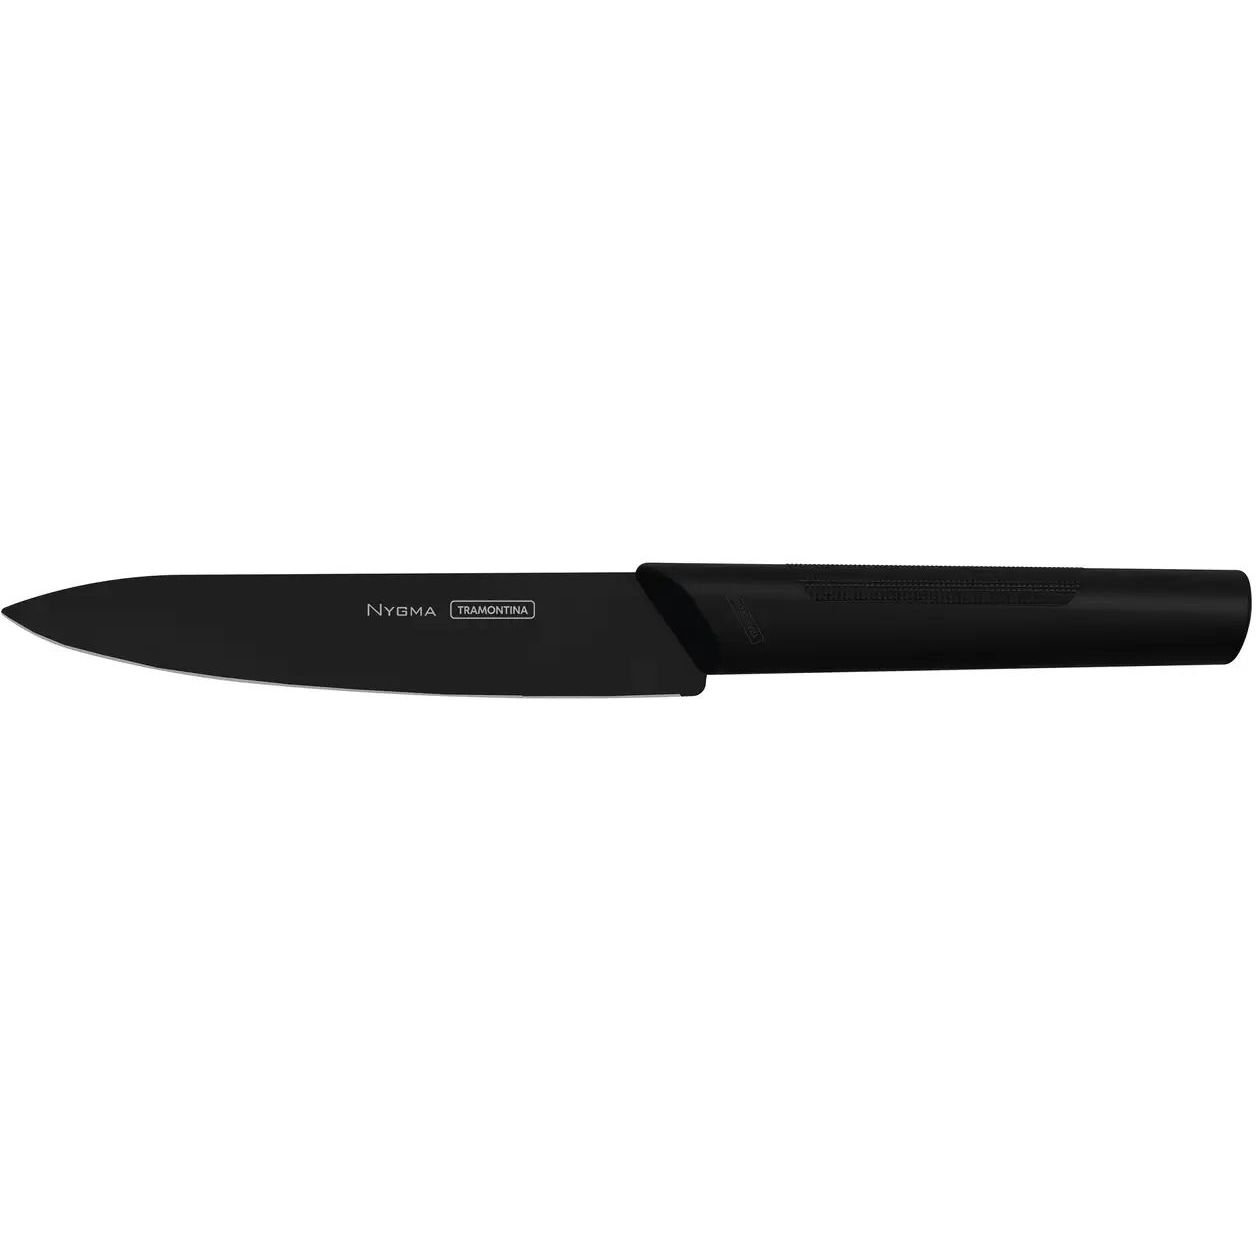 Нож универсальный Tramontina Nygma, 15,2 см (23683/106) - фото 1